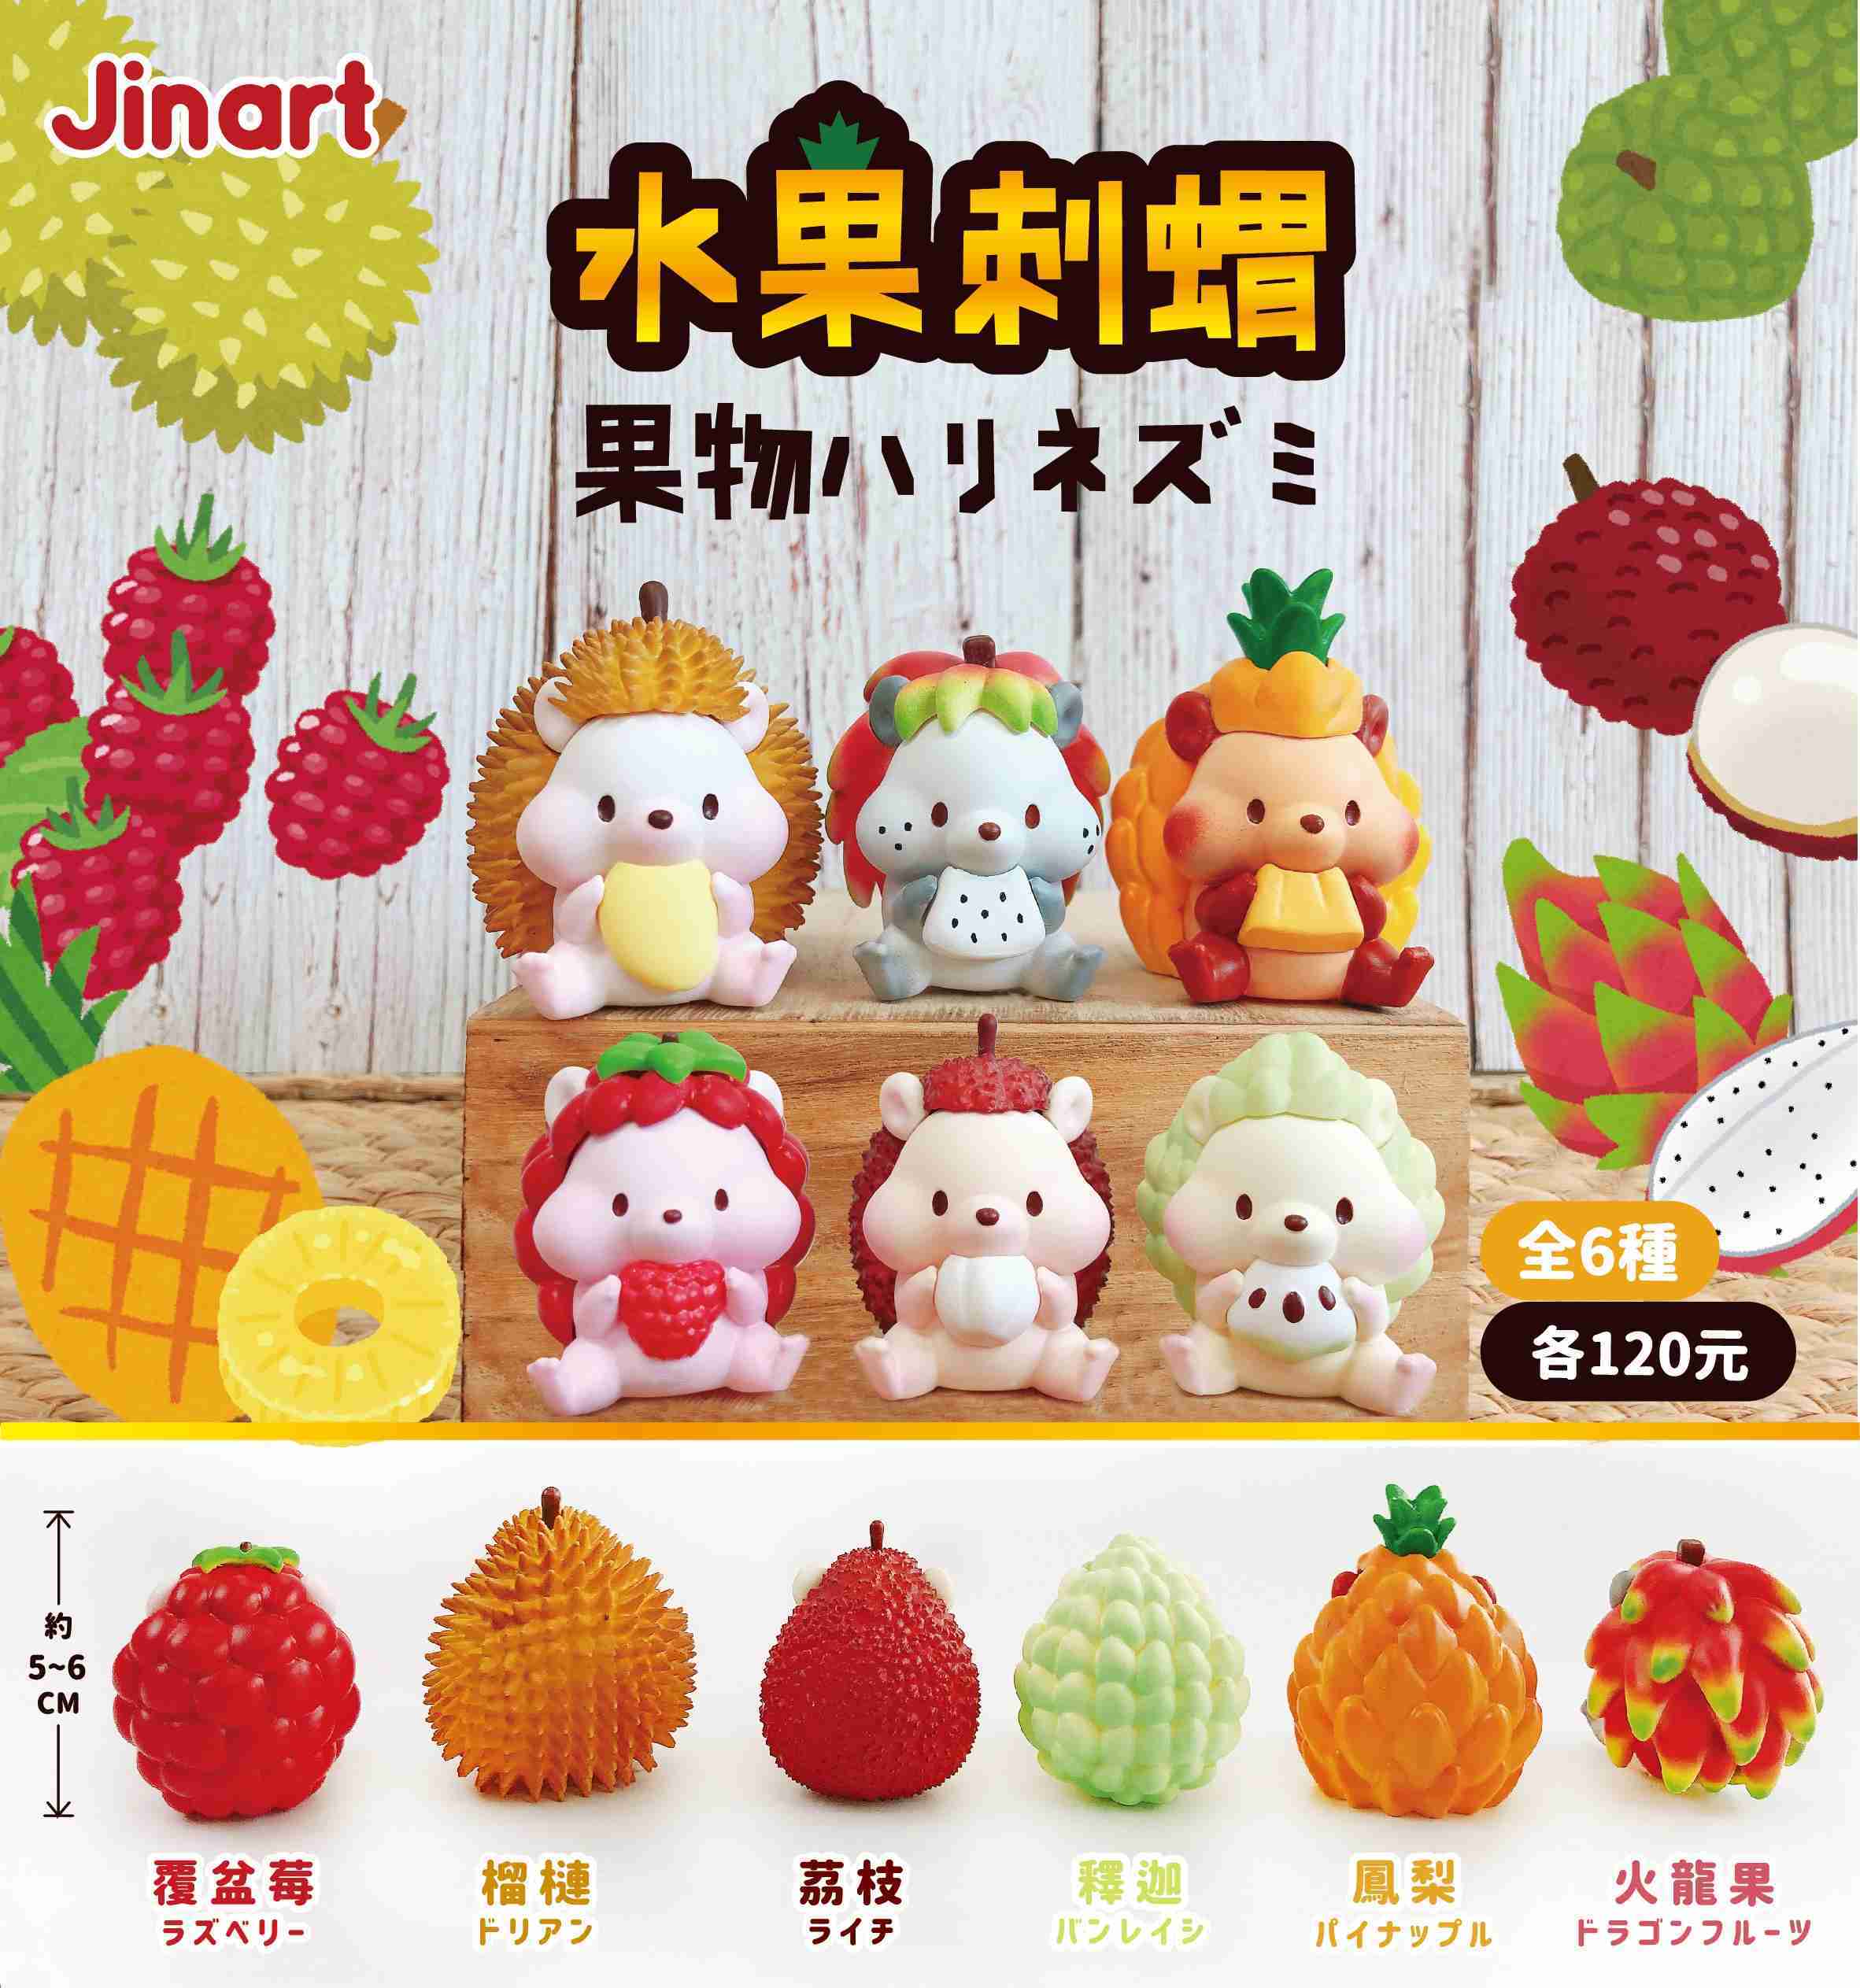 【玩具之森】《現貨》JinArt TOY ​- 水果刺蝟 扭蛋 轉蛋  (全套六款出售)